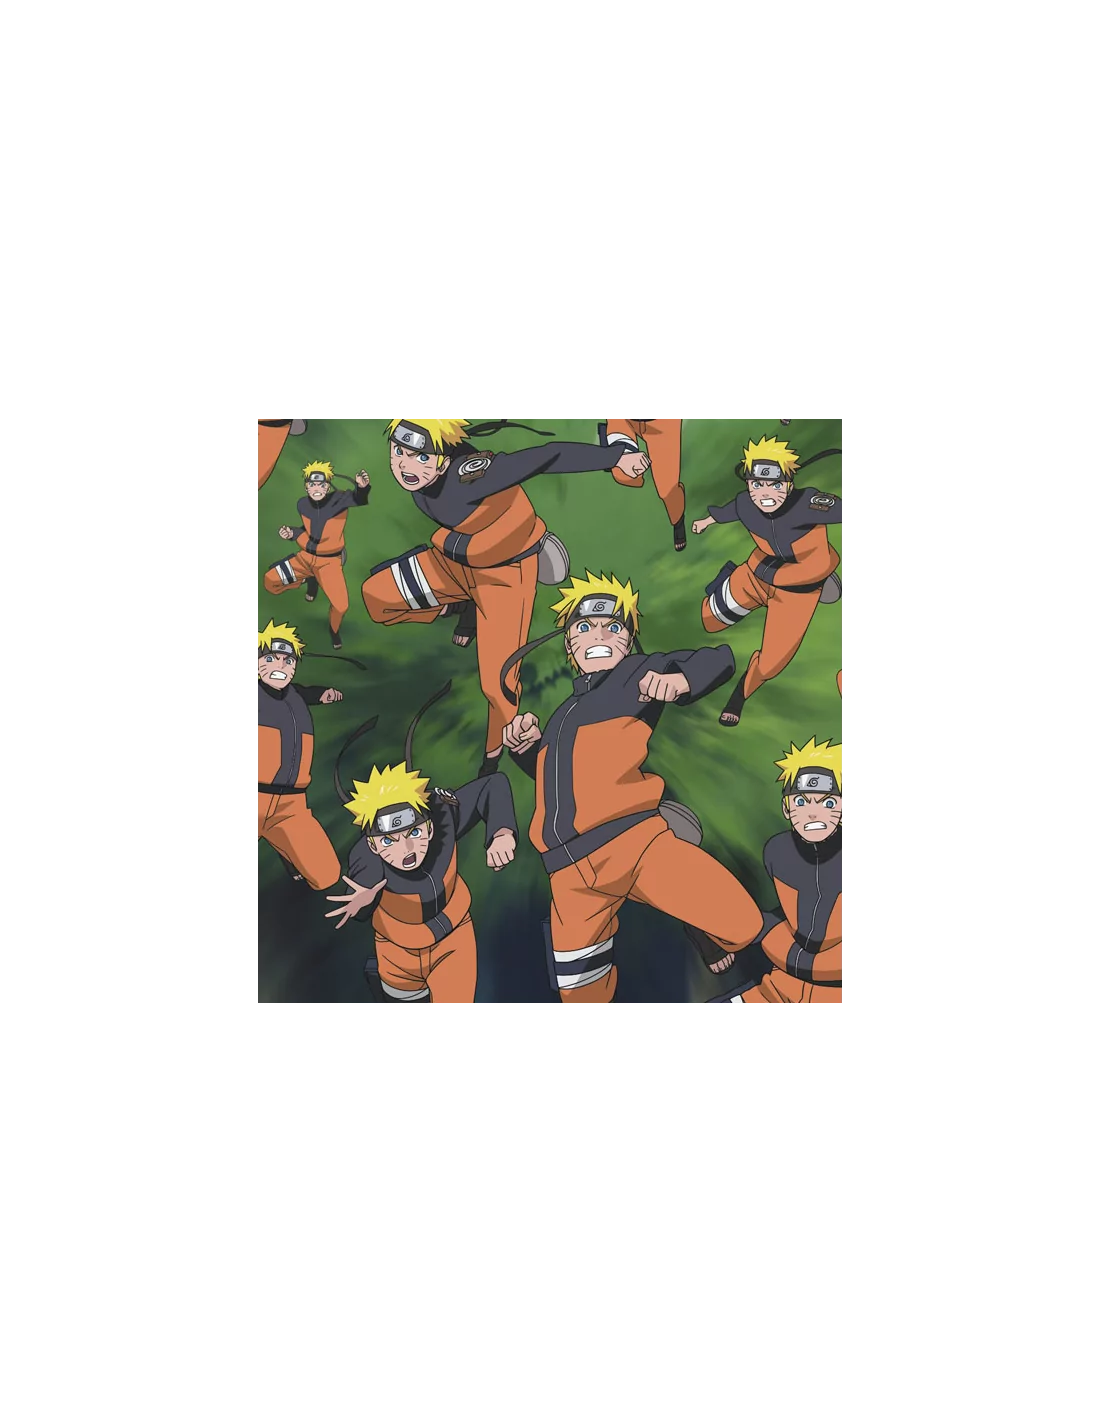 Crítica de Naruto Shippuden BOX 3-5 (Selecta Visión) - Ramen Para Dos